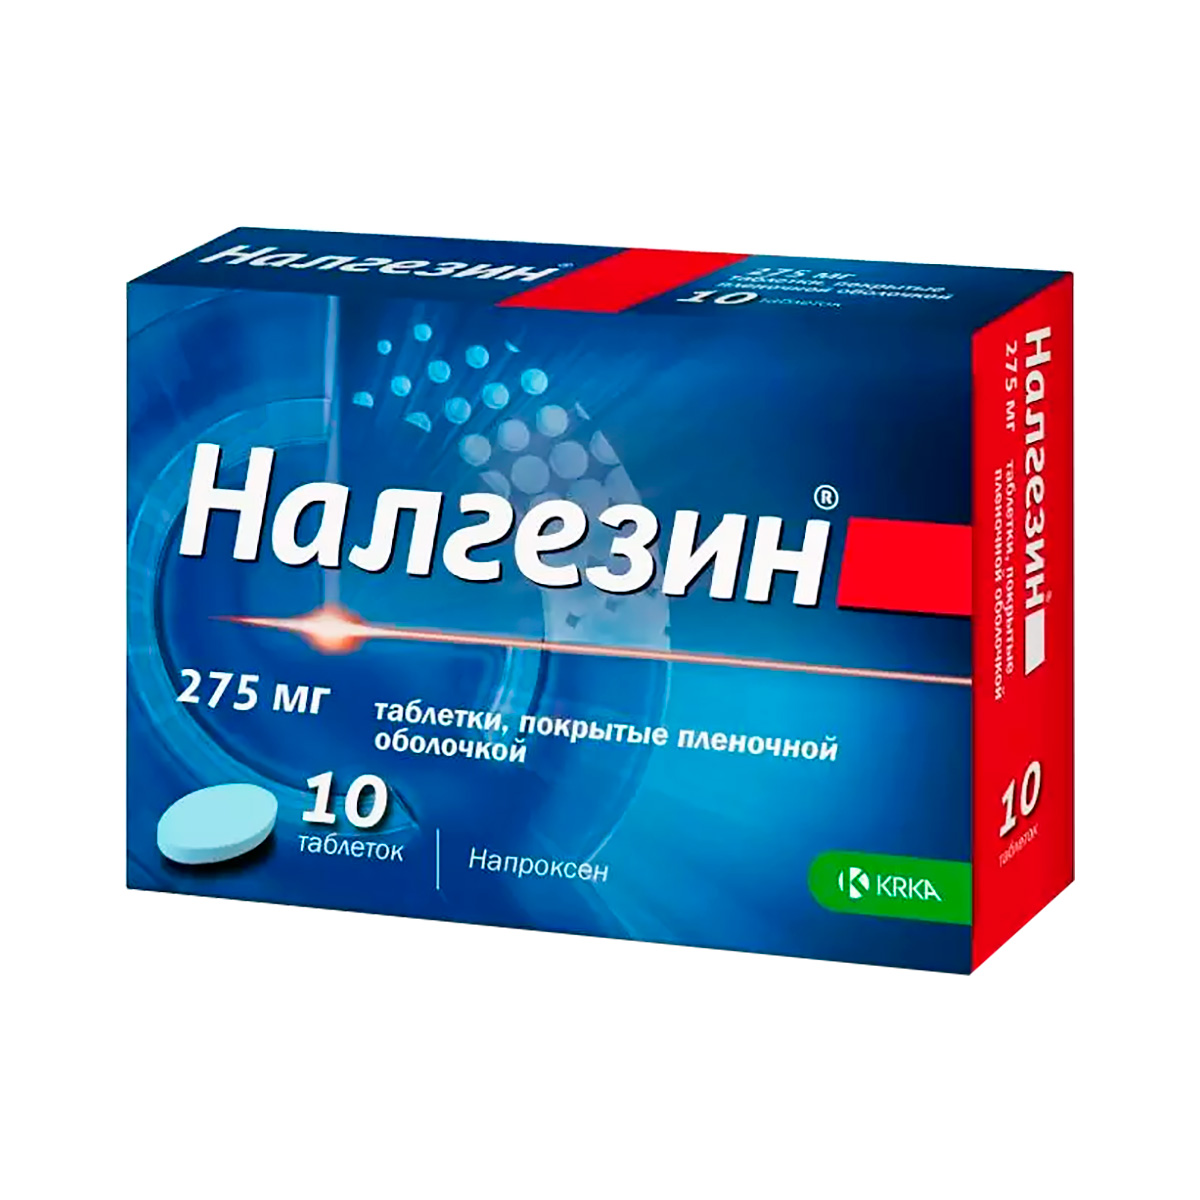 Налгезин 275 мг таблетки покрытые пленочной оболочкой 10 шт